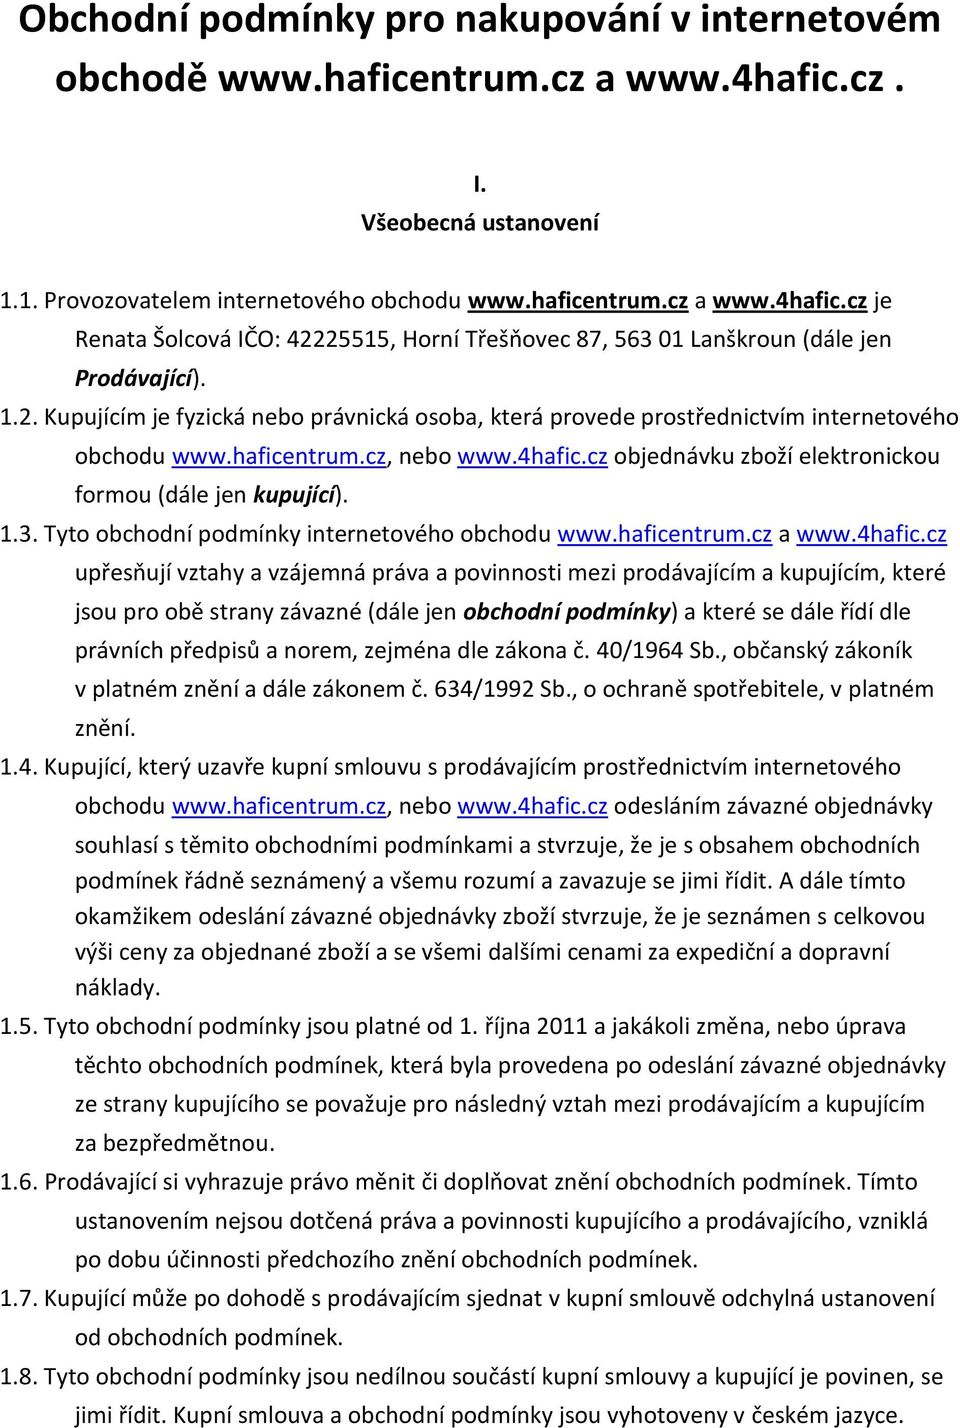 3. Tyto obchodní podmínky internetového obchodu www.haficentrum.cz a www.4hafic.